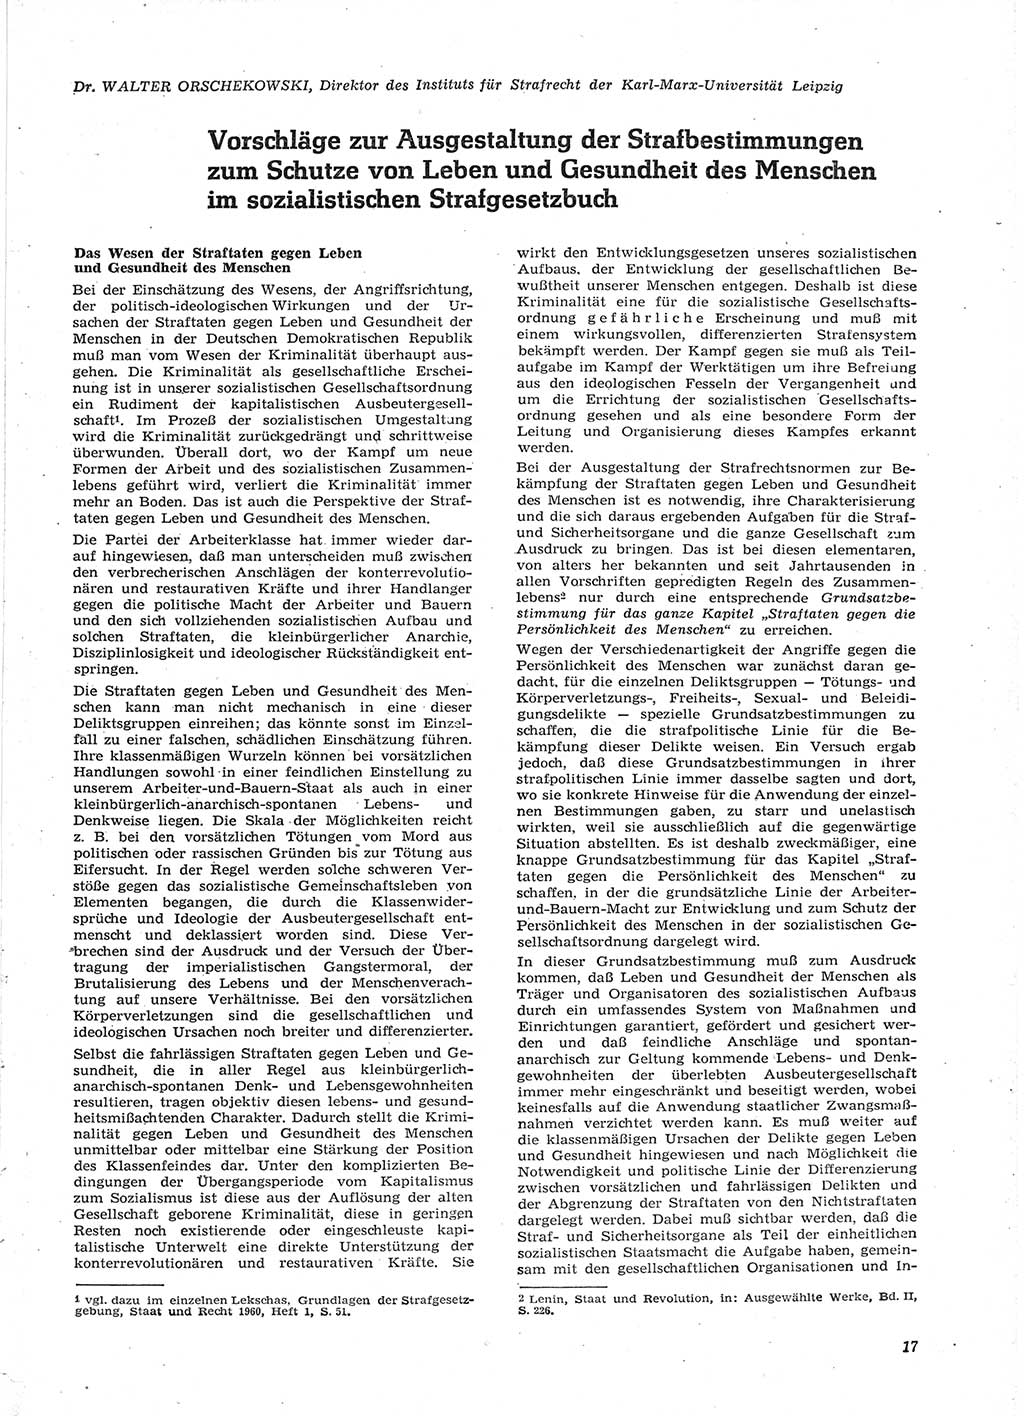 Neue Justiz (NJ), Zeitschrift für Recht und Rechtswissenschaft [Deutsche Demokratische Republik (DDR)], 15. Jahrgang 1961, Seite 17 (NJ DDR 1961, S. 17)